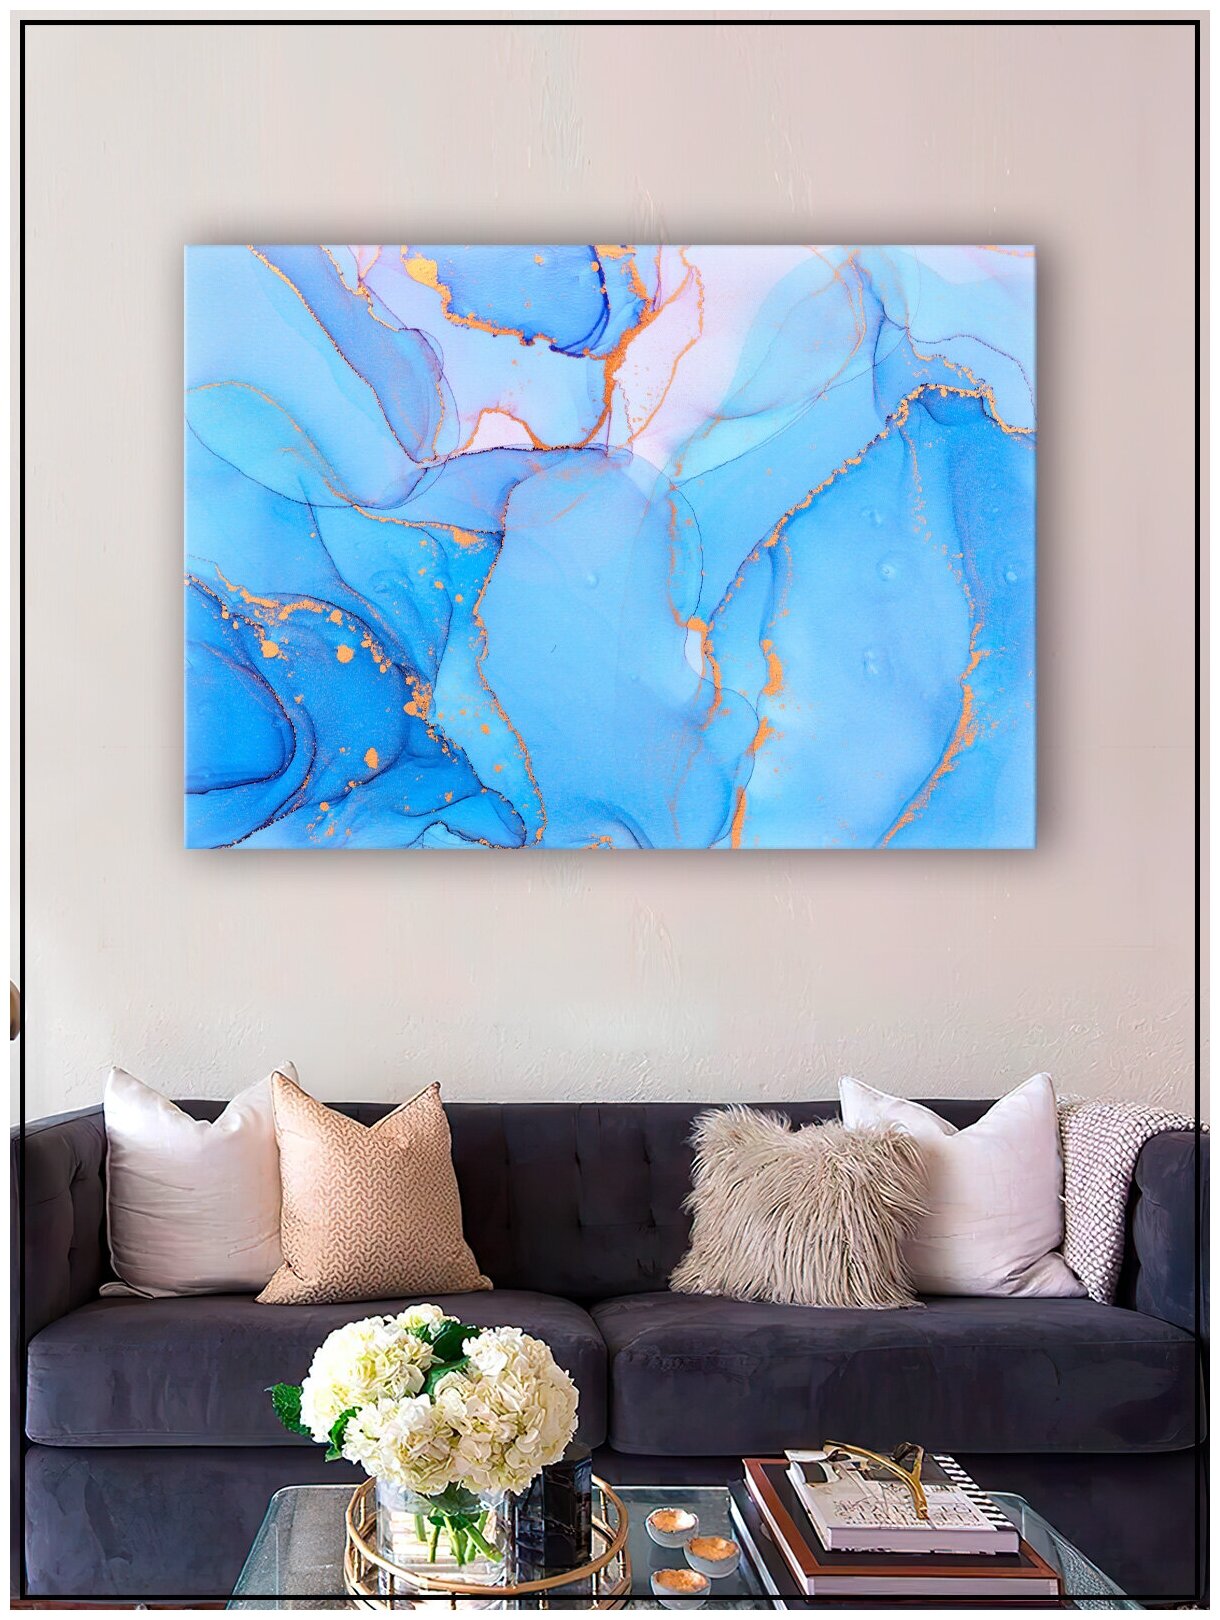 Картина для интерьера на натуральном хлопковом холсте "Абстракция голубой мрамор", 30*40см, холст на подрамнике, картина в подарок